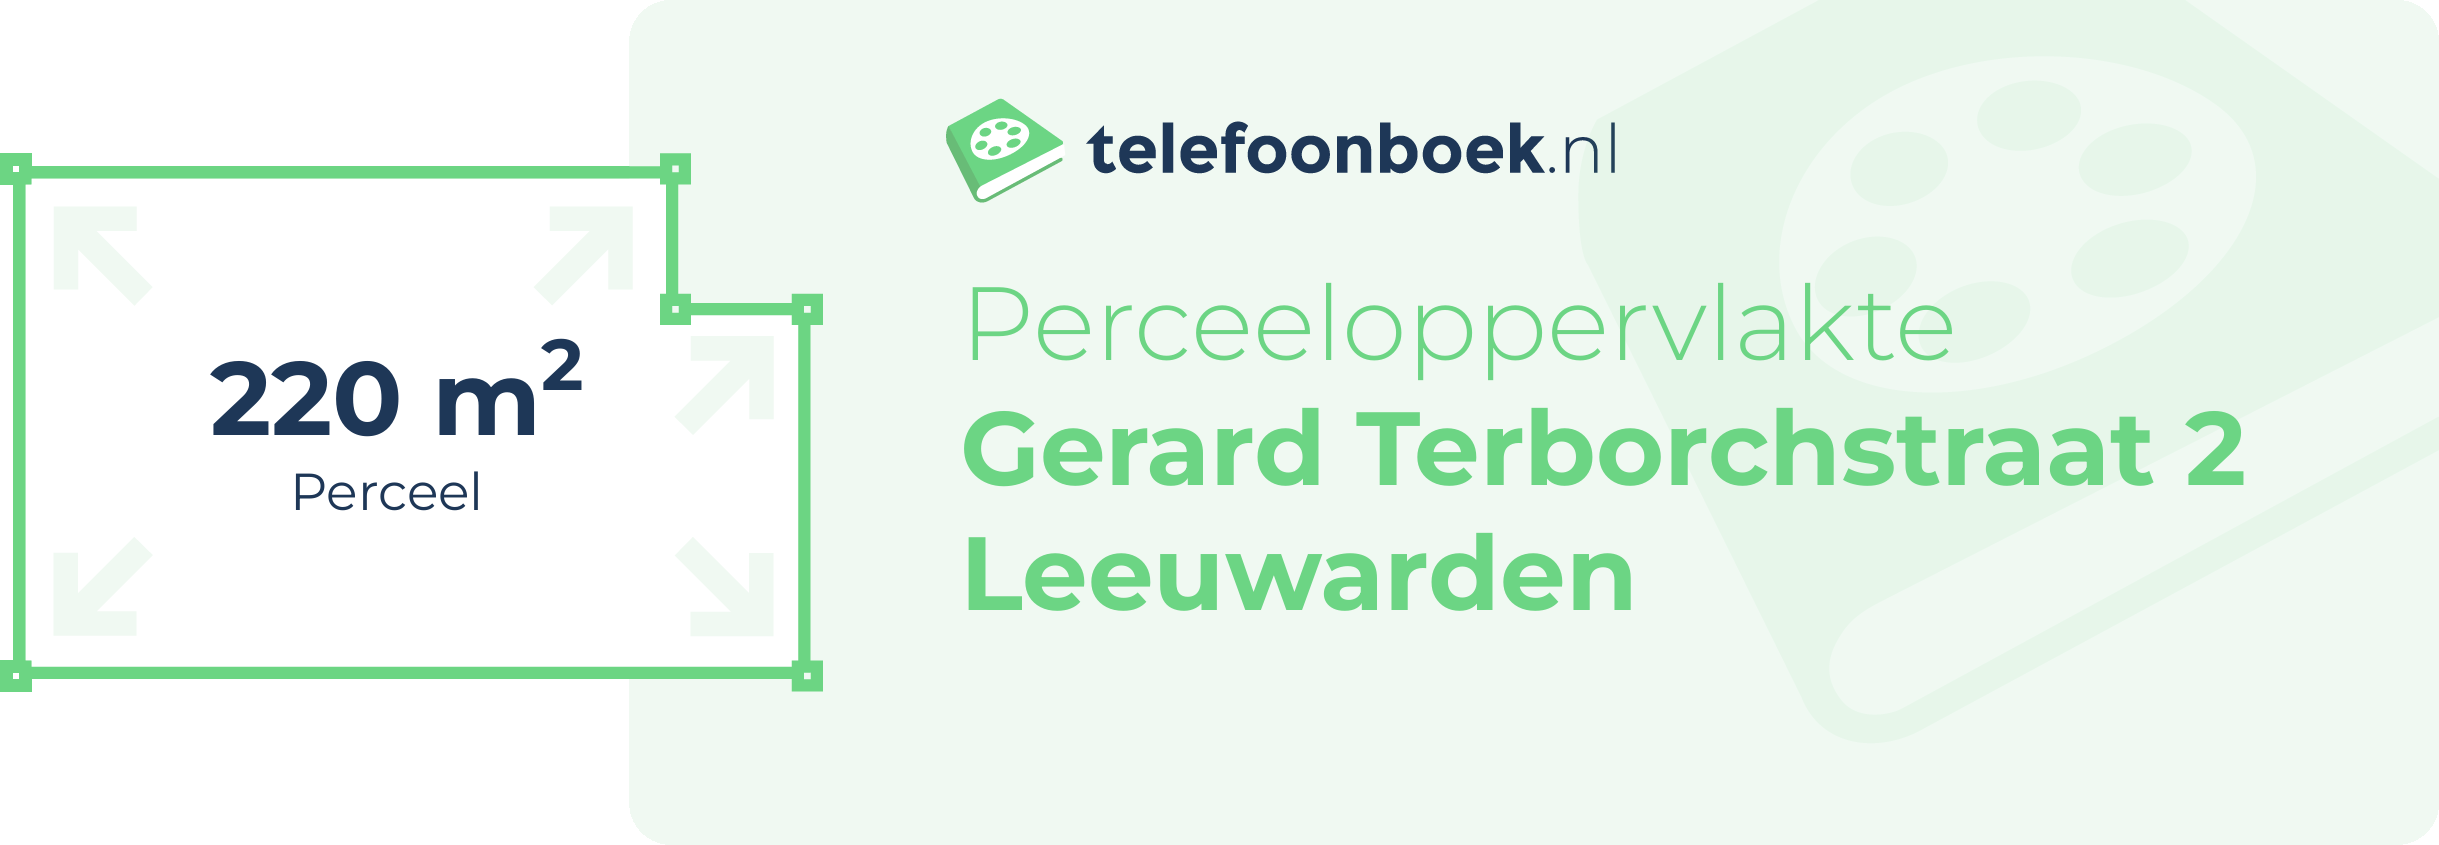 Perceeloppervlakte Gerard Terborchstraat 2 Leeuwarden